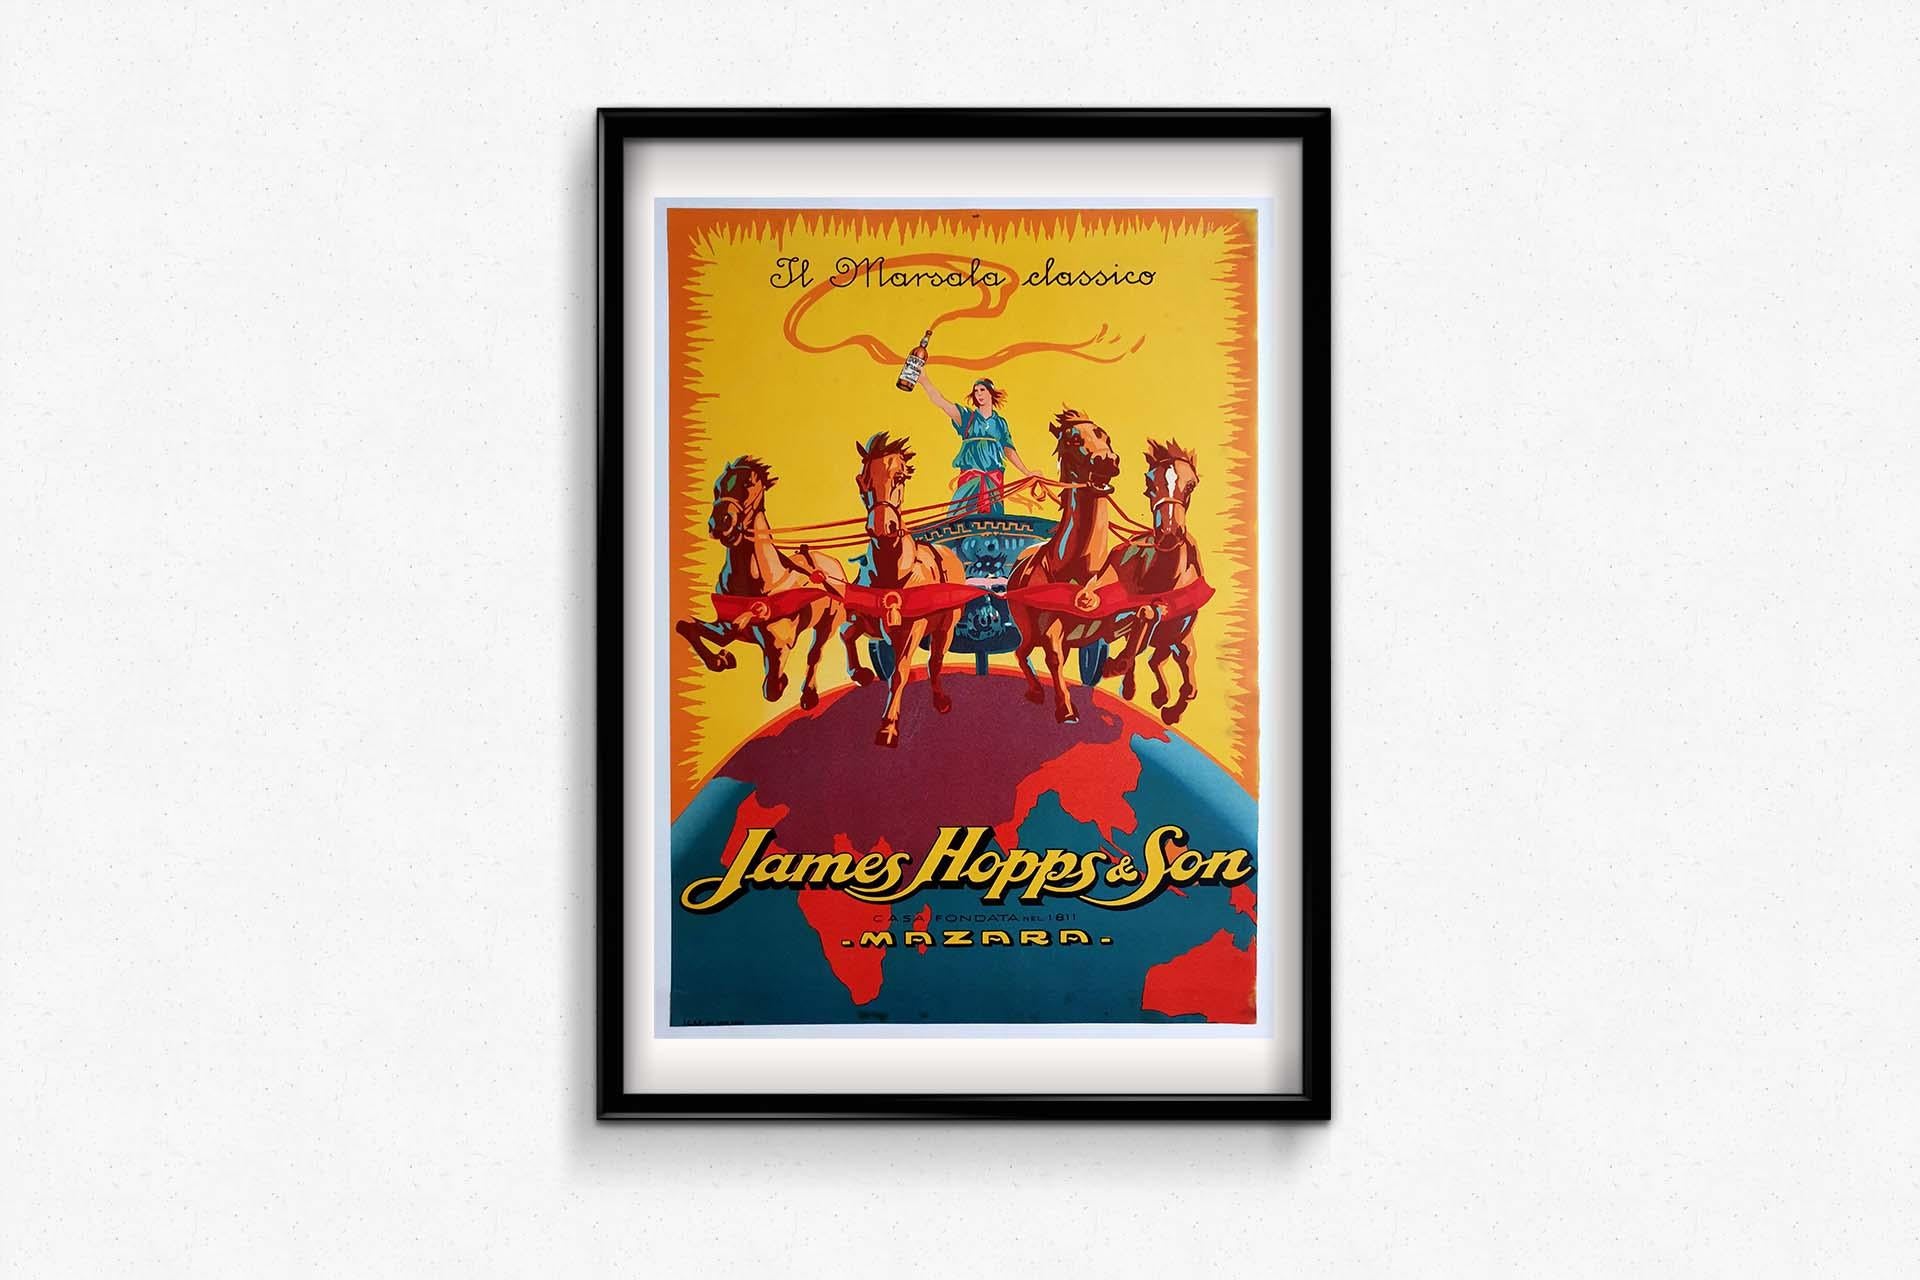 original advertising poster for James Hopps & Son's 